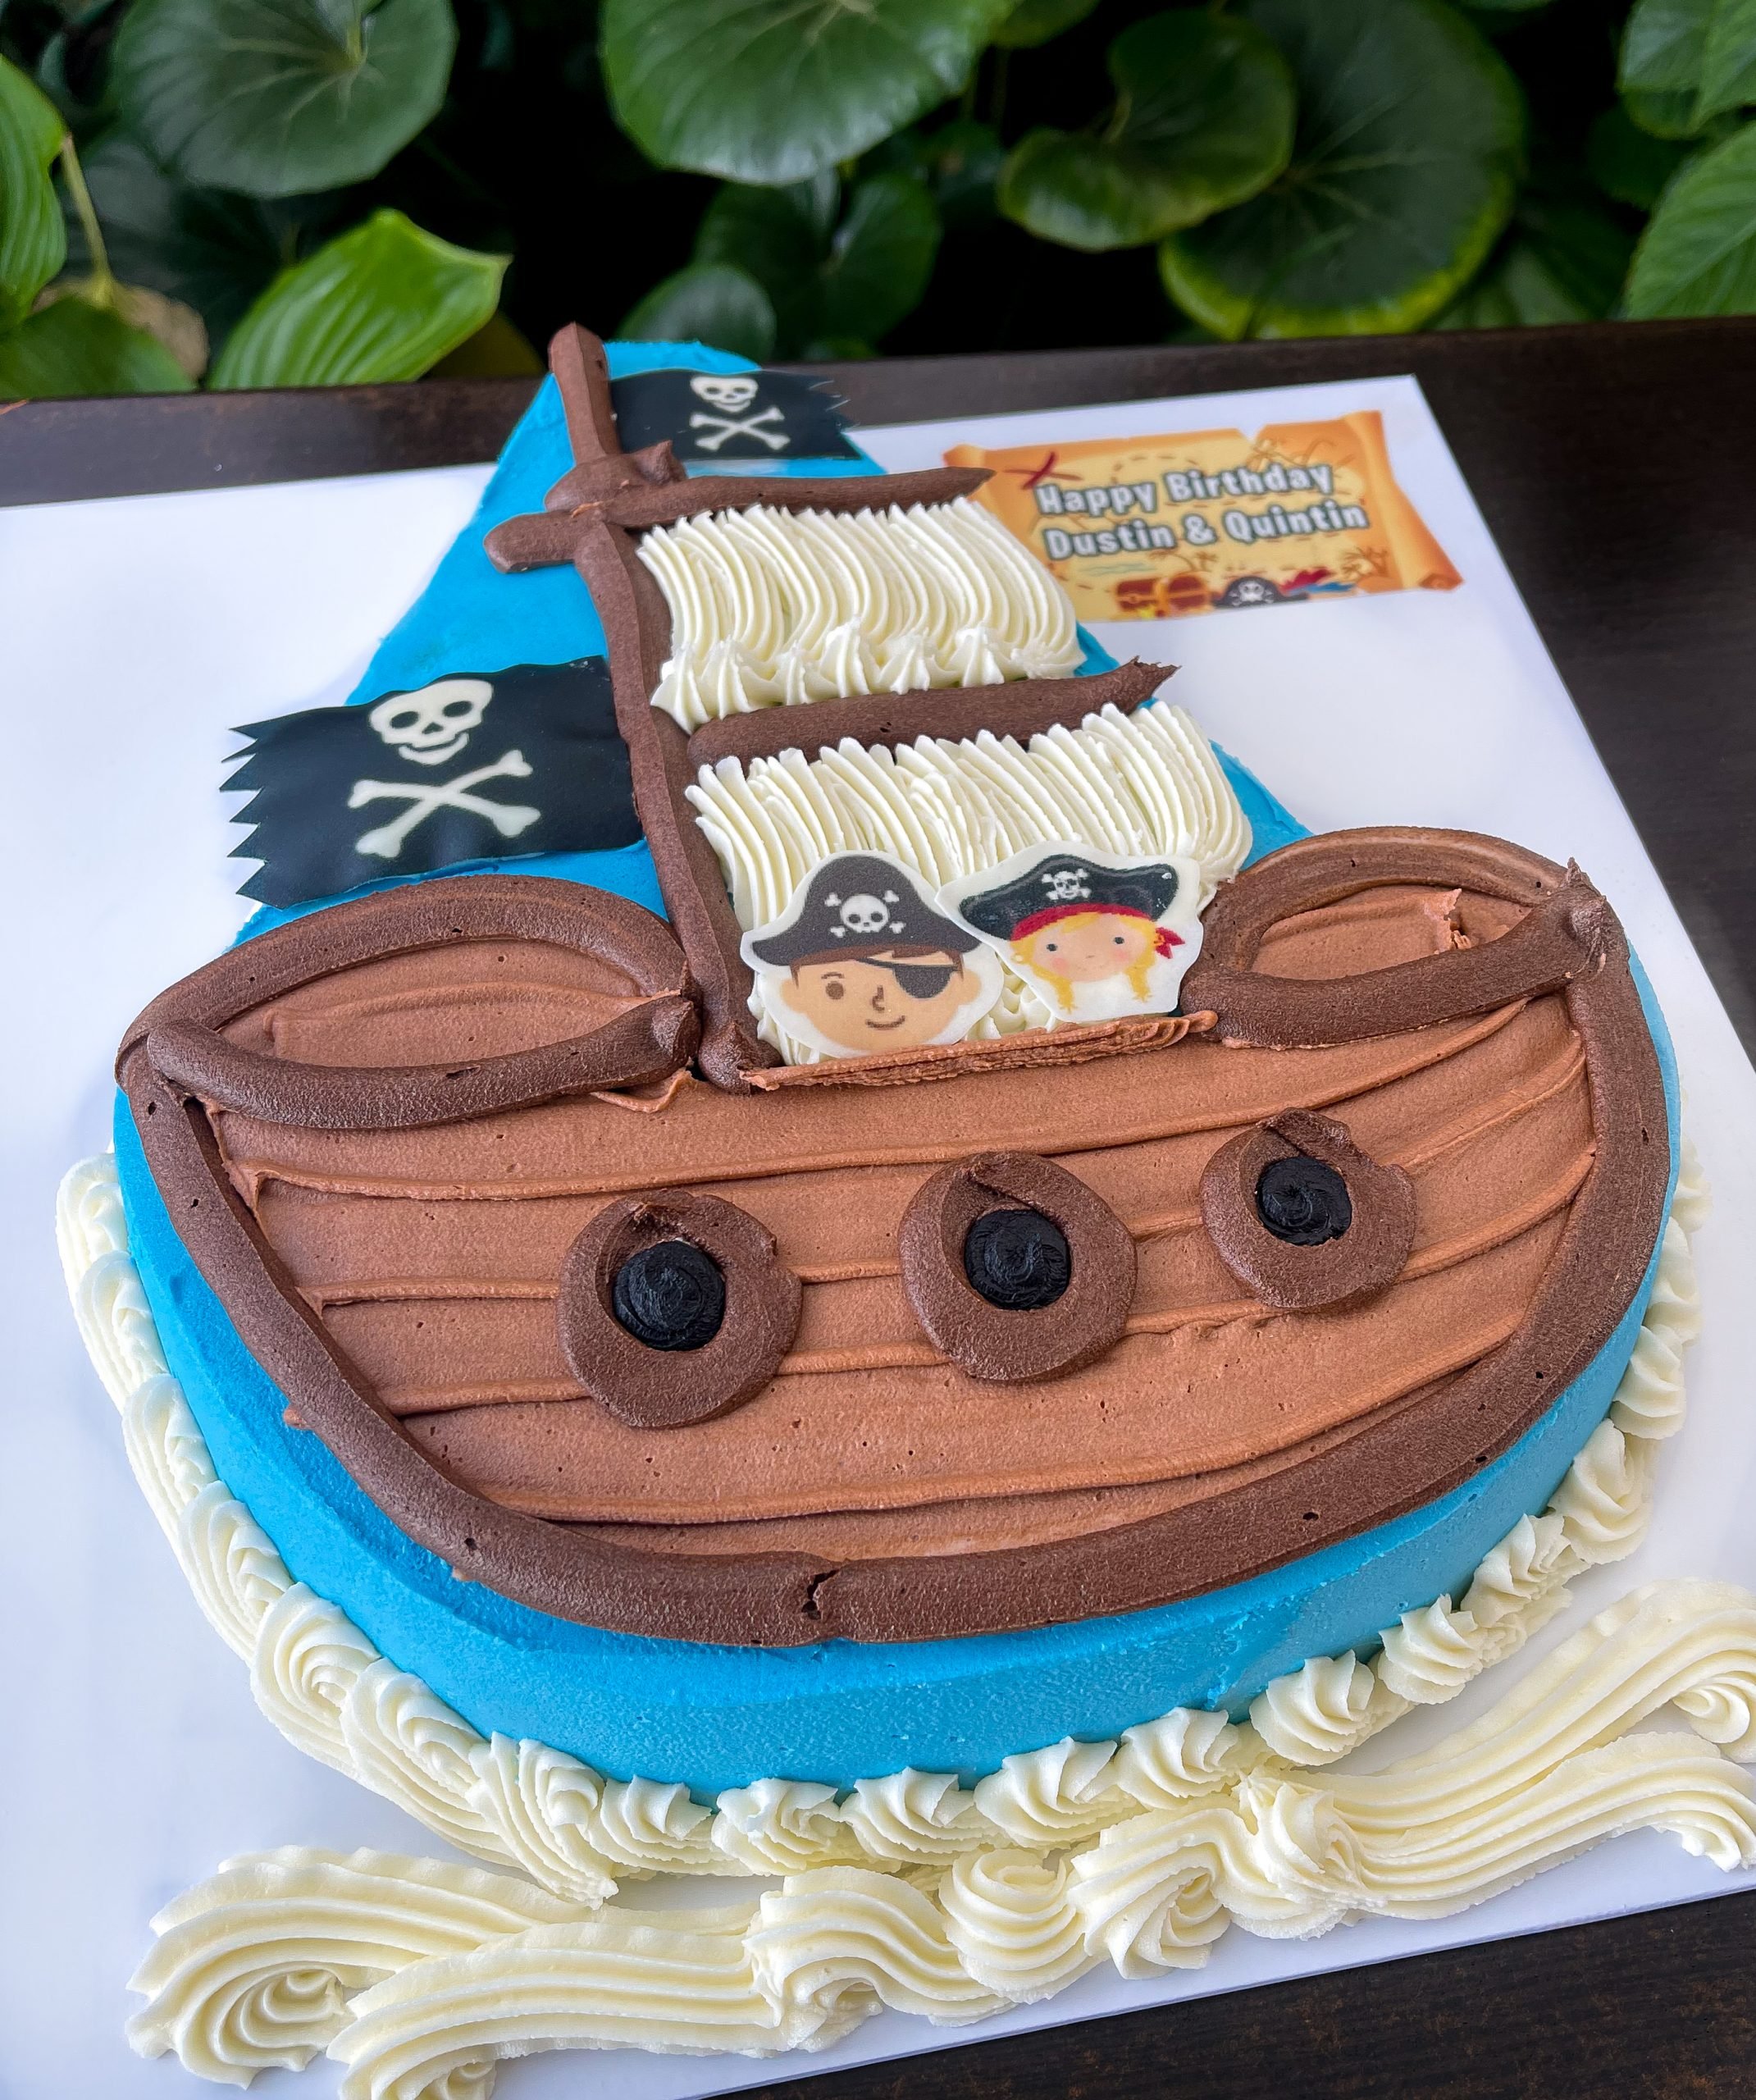 Yacht cruiser boat cake - Decorated Cake by Angel Cake - CakesDecor